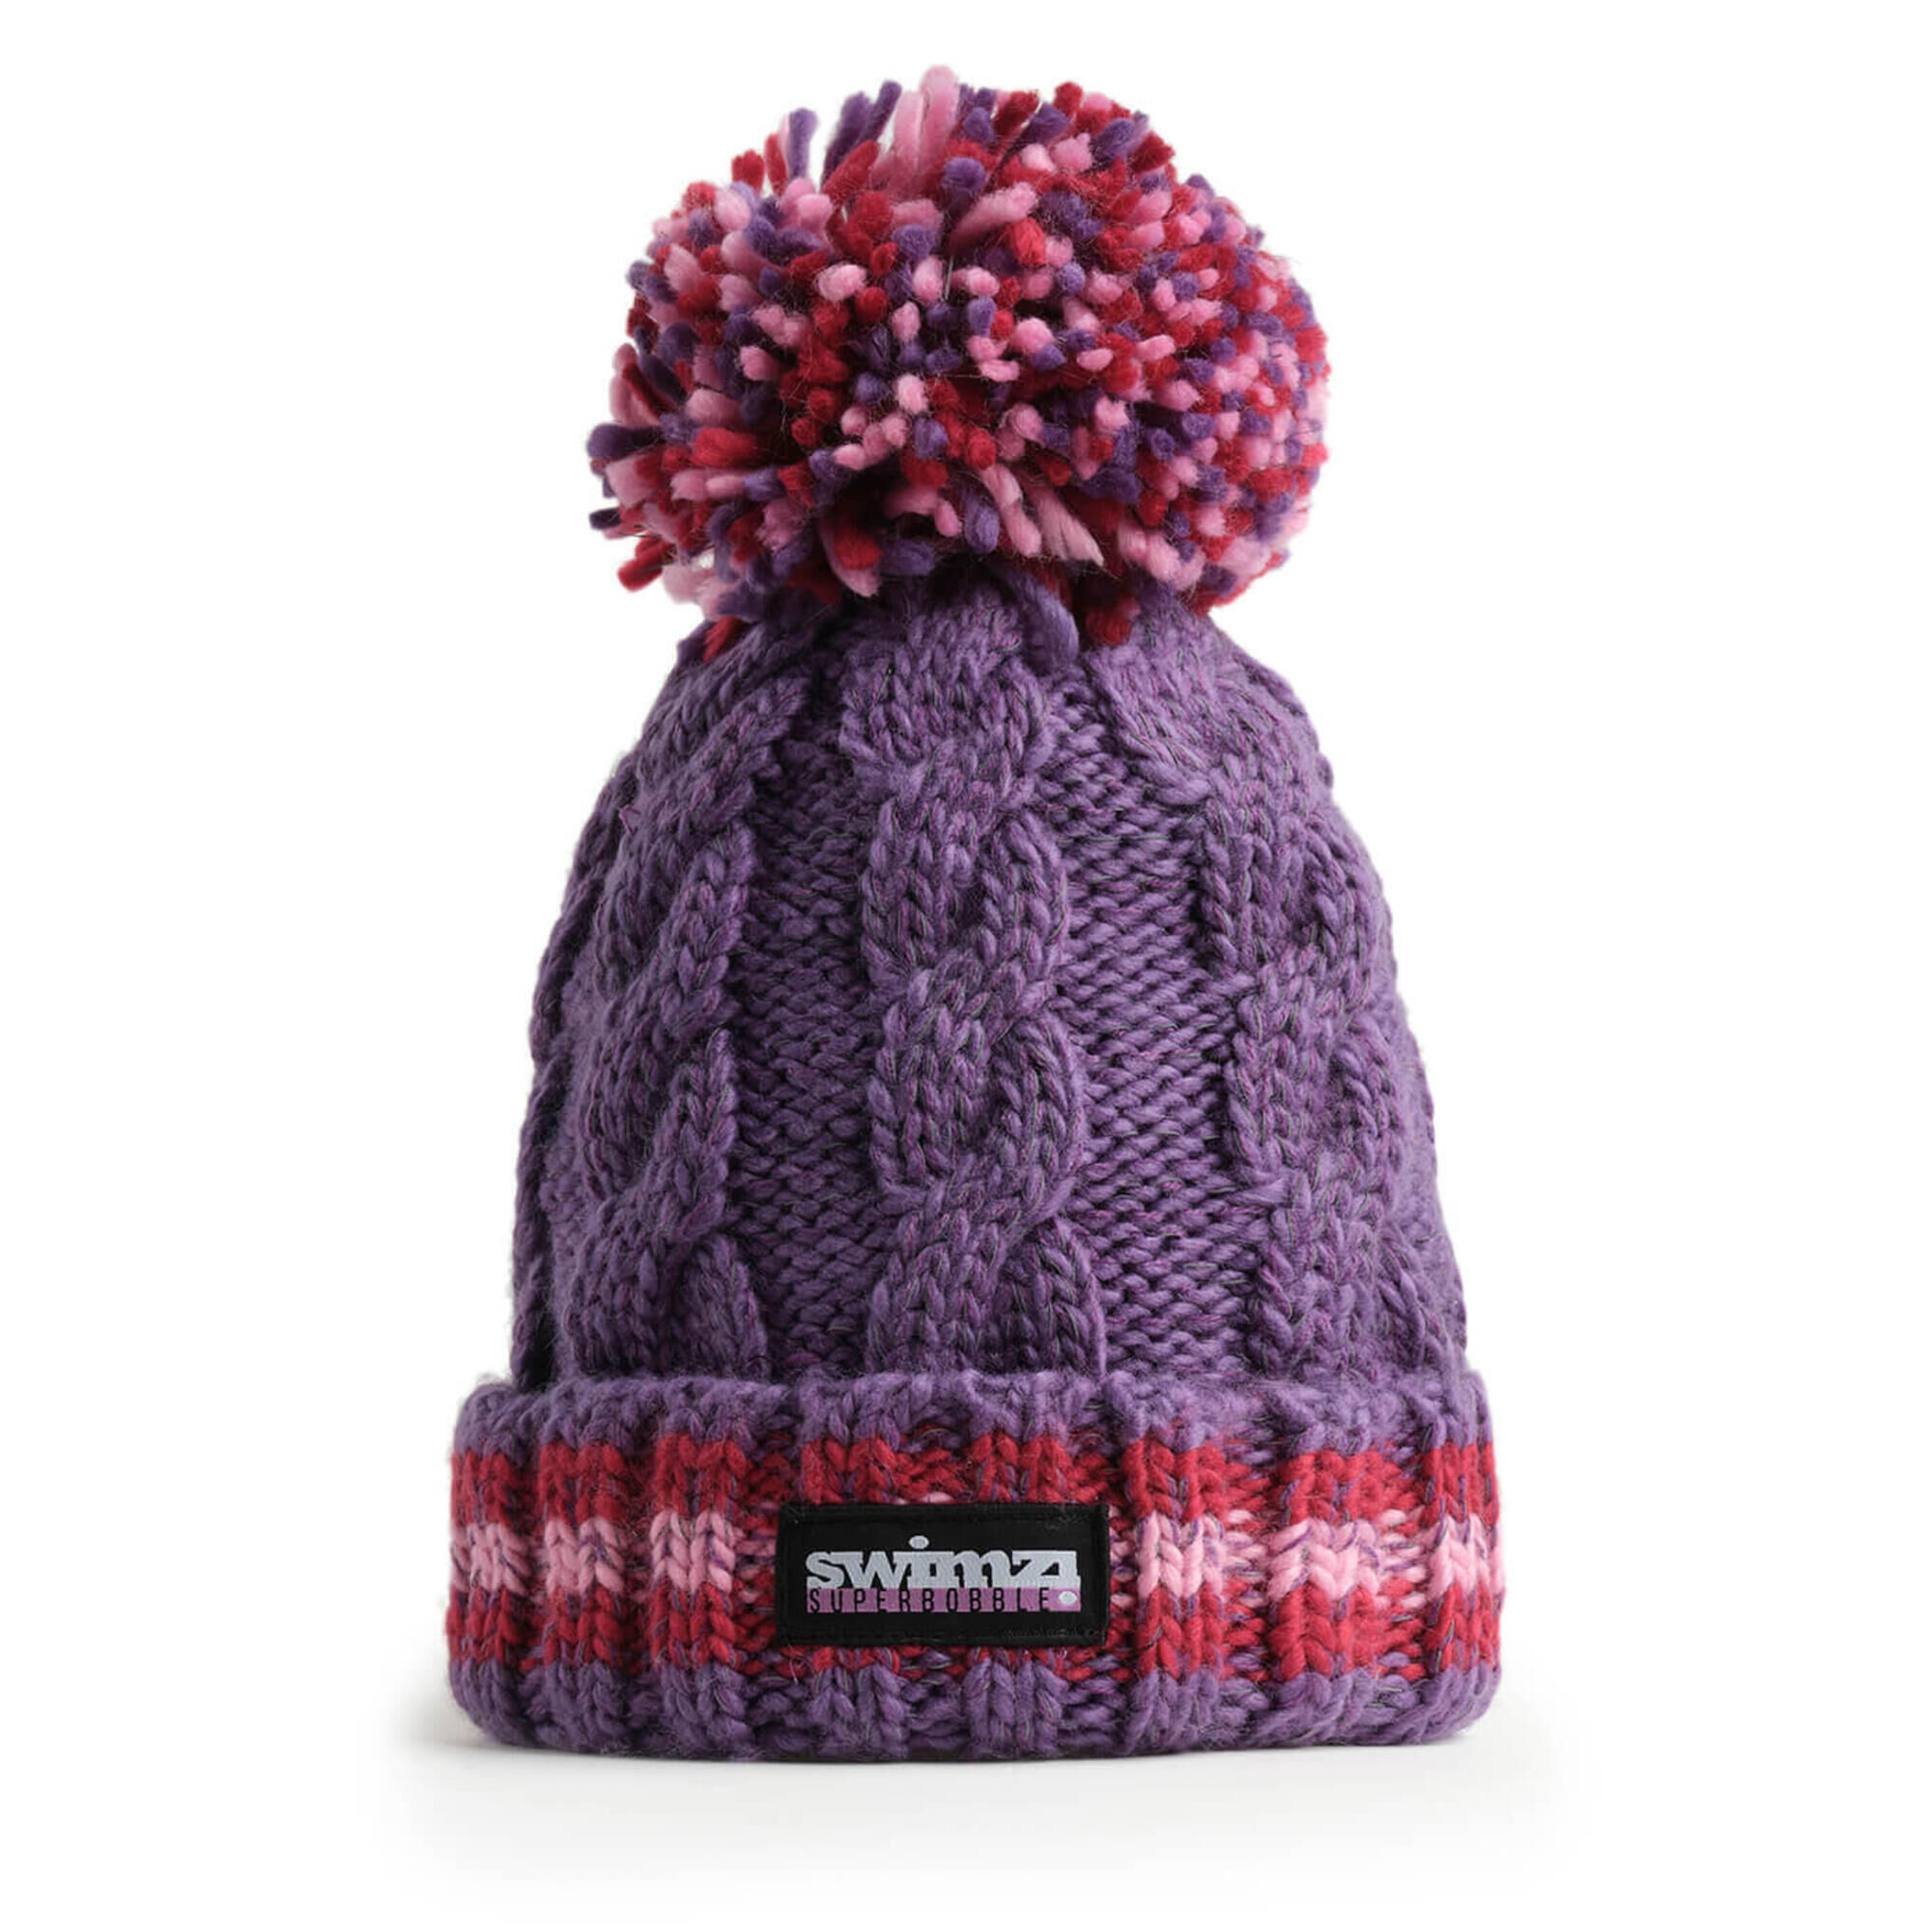 SWIMZI Berries Cable Knit Super Bobble Hat